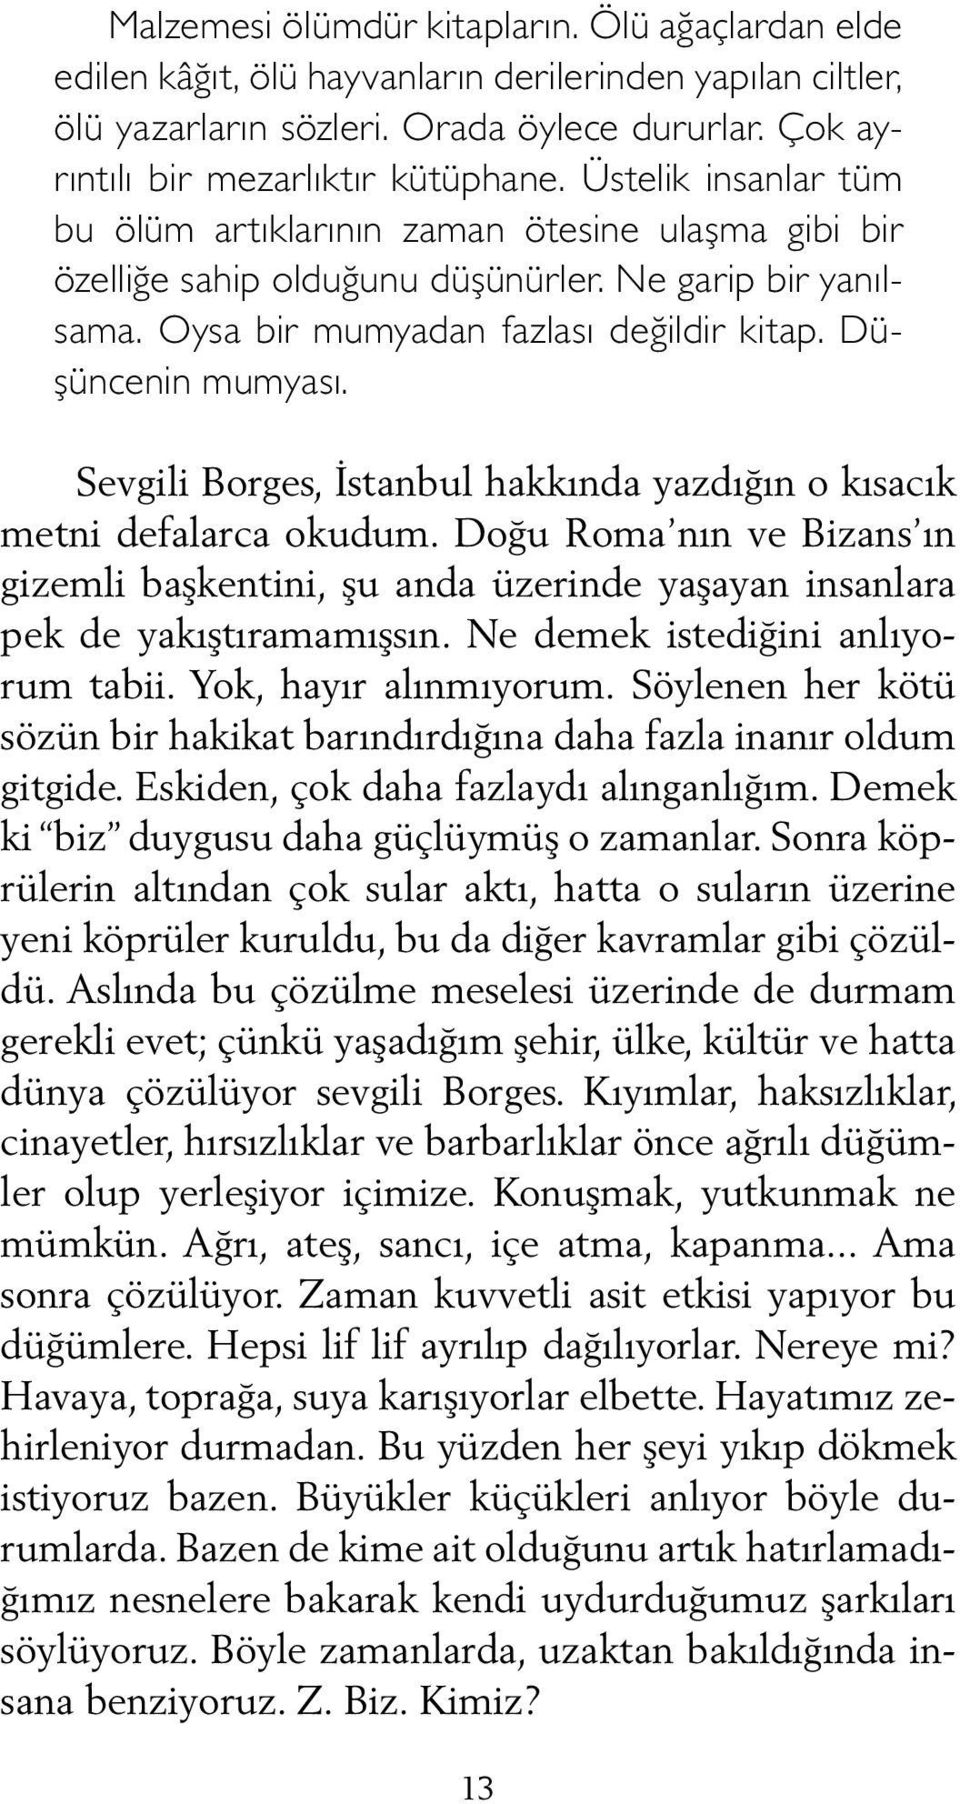 Sevgili Borges, İstanbul hakkında yazdığın o kısacık metni defalarca okudum. Doğu Roma nın ve Bizans ın gizemli başkentini, şu anda üzerinde yaşayan insanlara pek de yakıştıramamışsın.